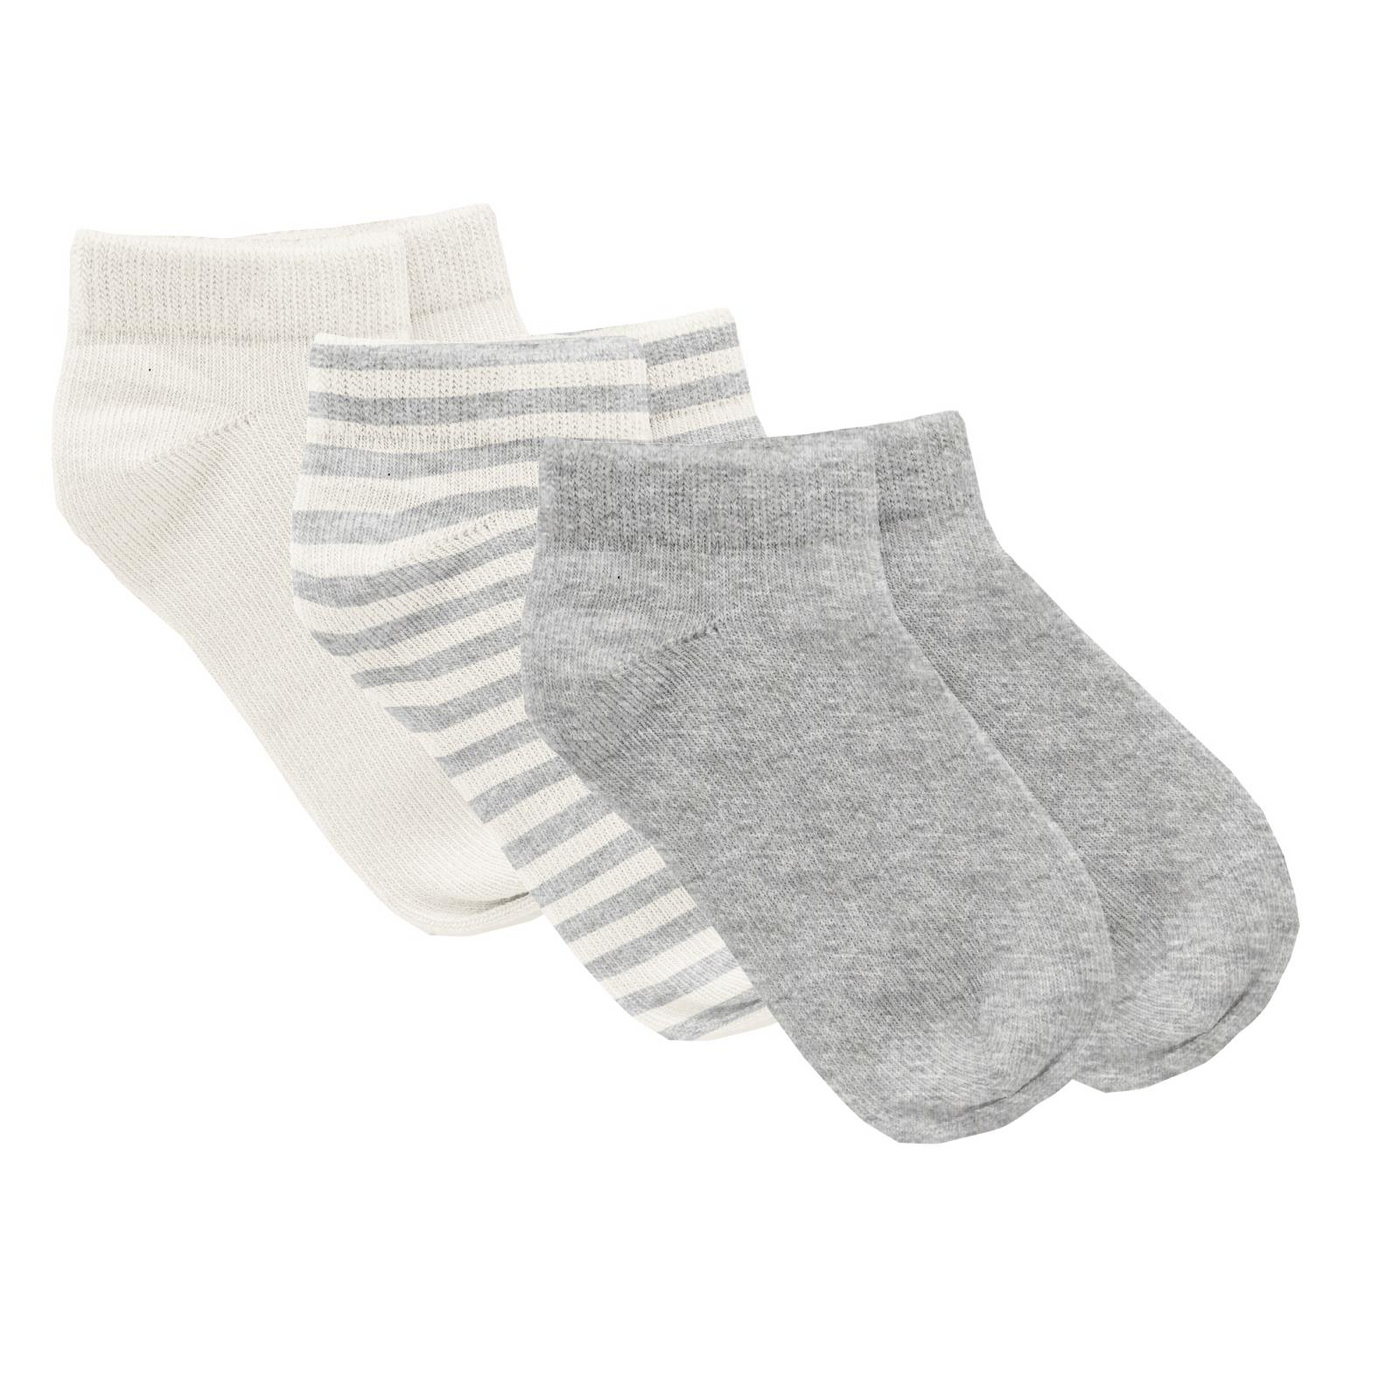 Kickee Pants Ankle Socks Set of 3: Solid Heathered Mist, Heathered Mist Sweet Stripe & Natural